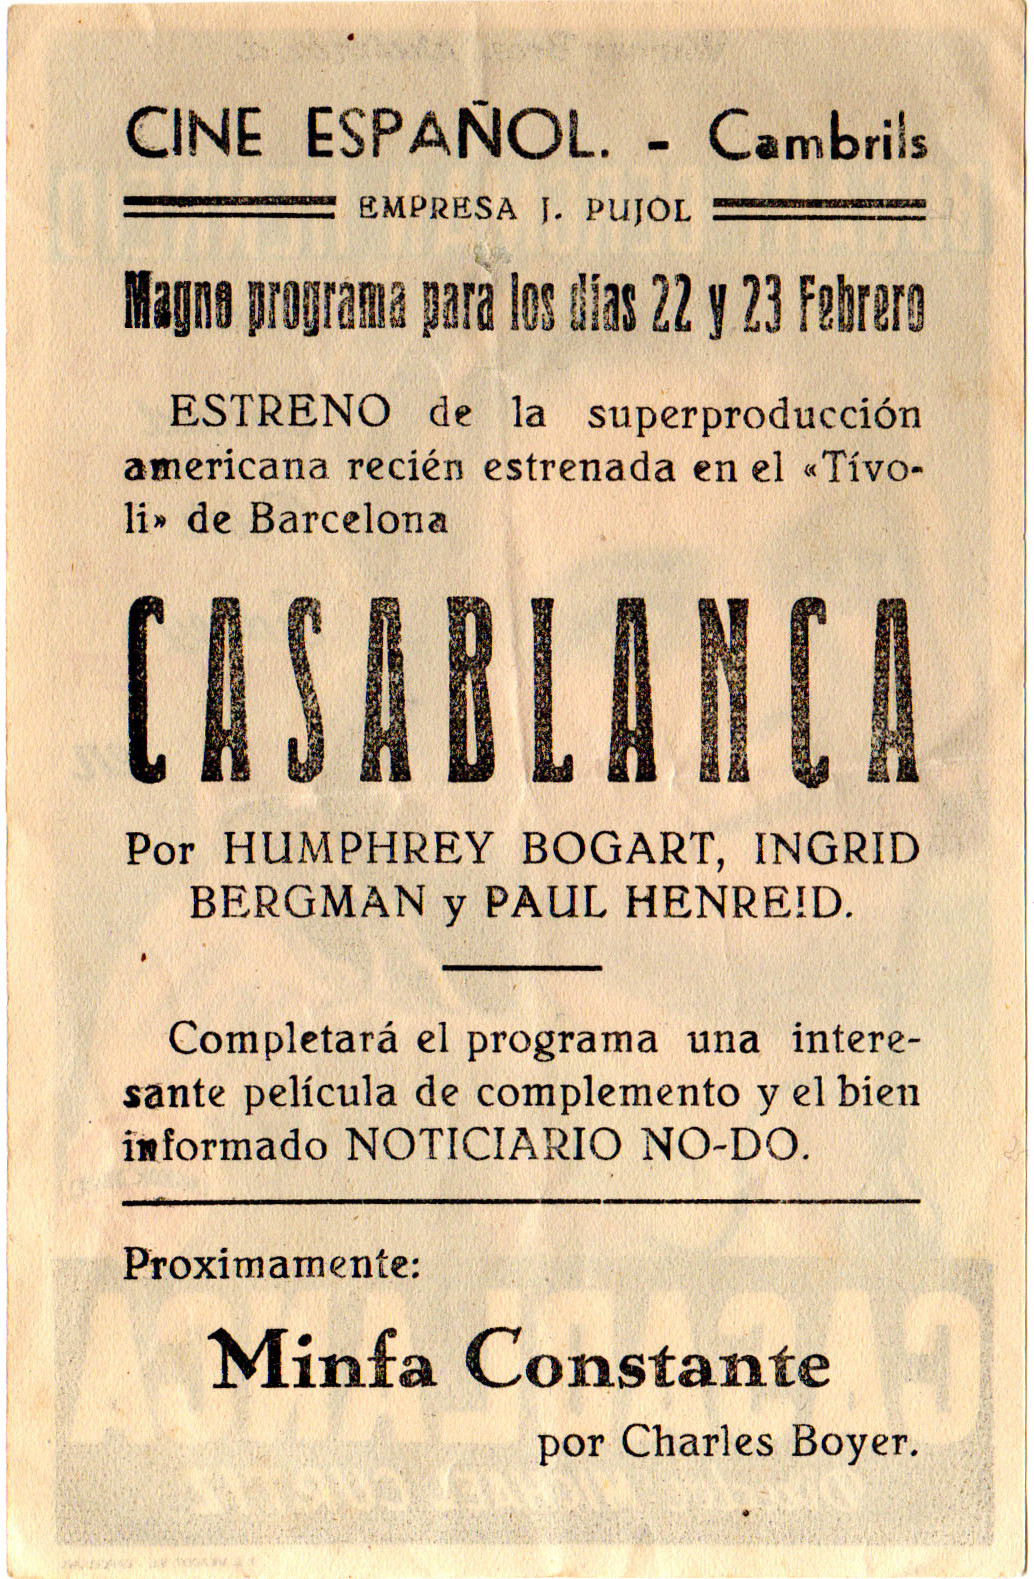 casablanca cinema español cambrils 1946